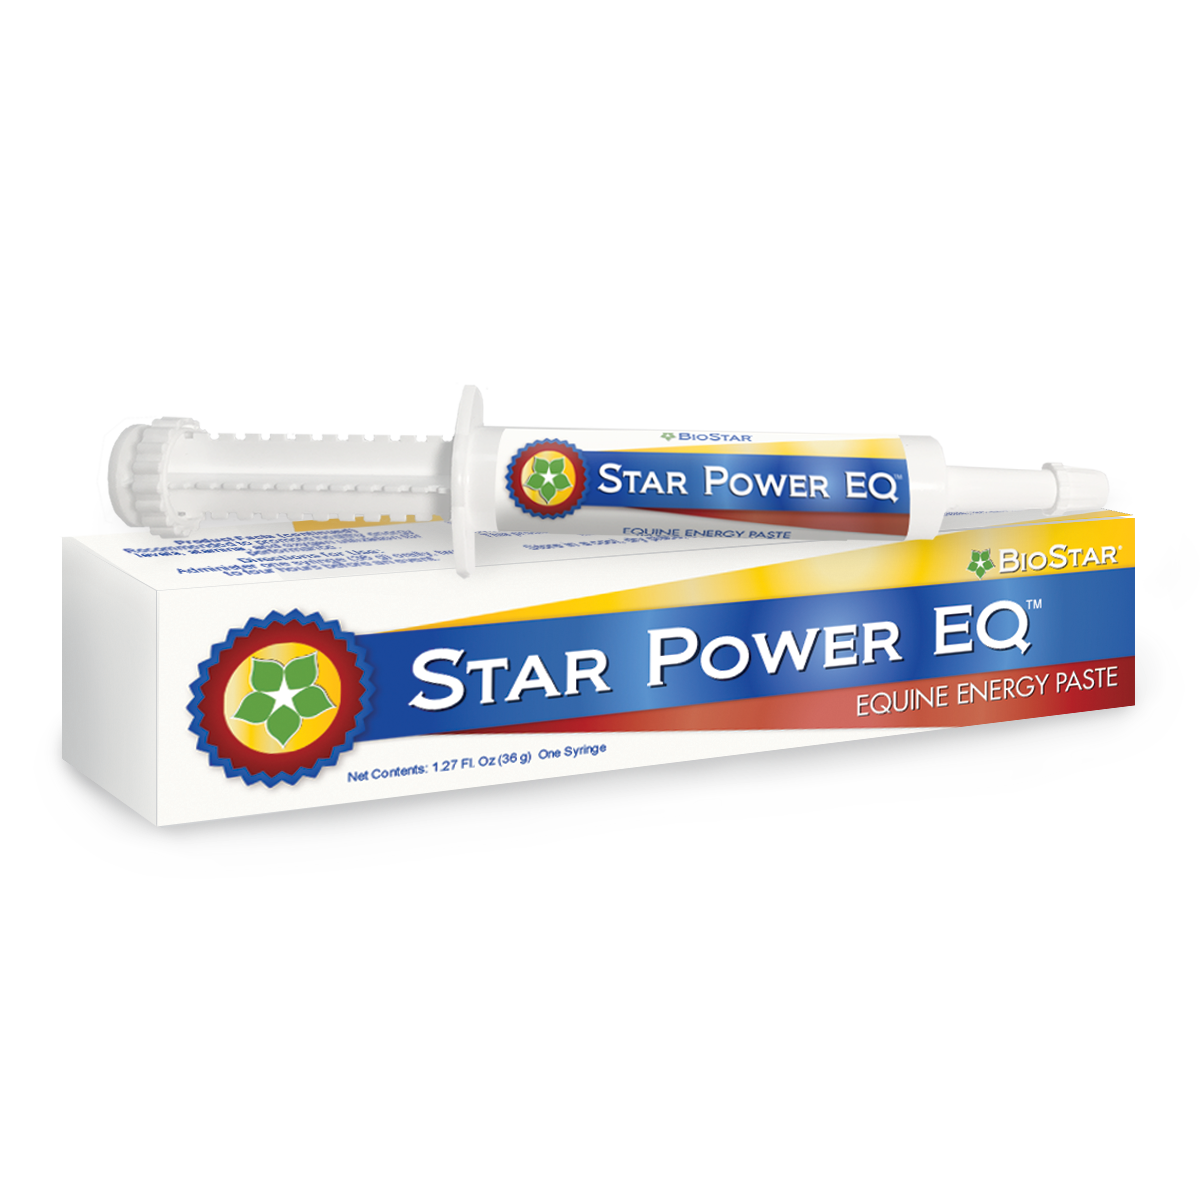 Star Power EQ